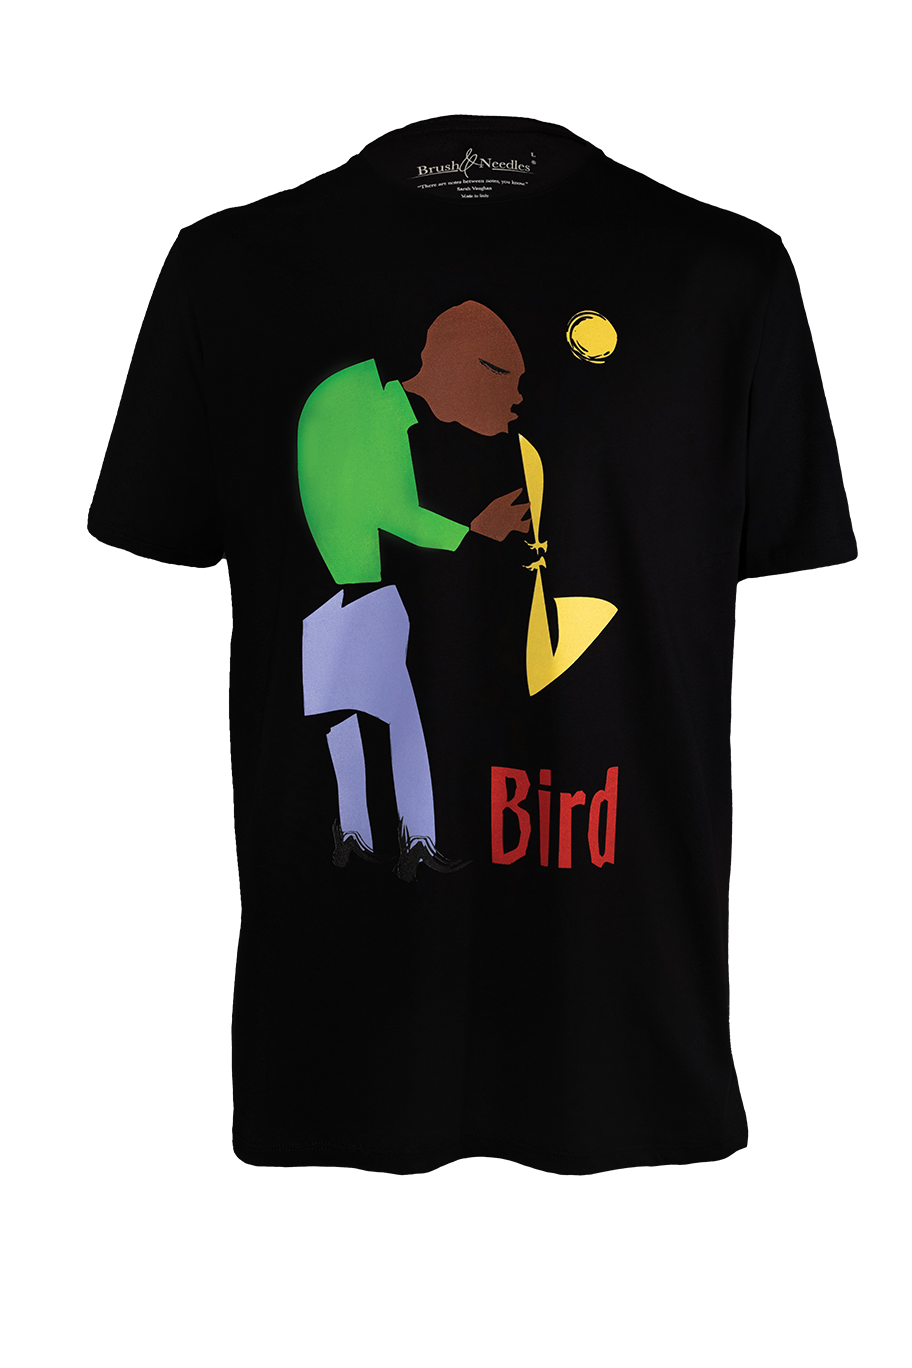 Charlie "Bird" Parker T-Shirts